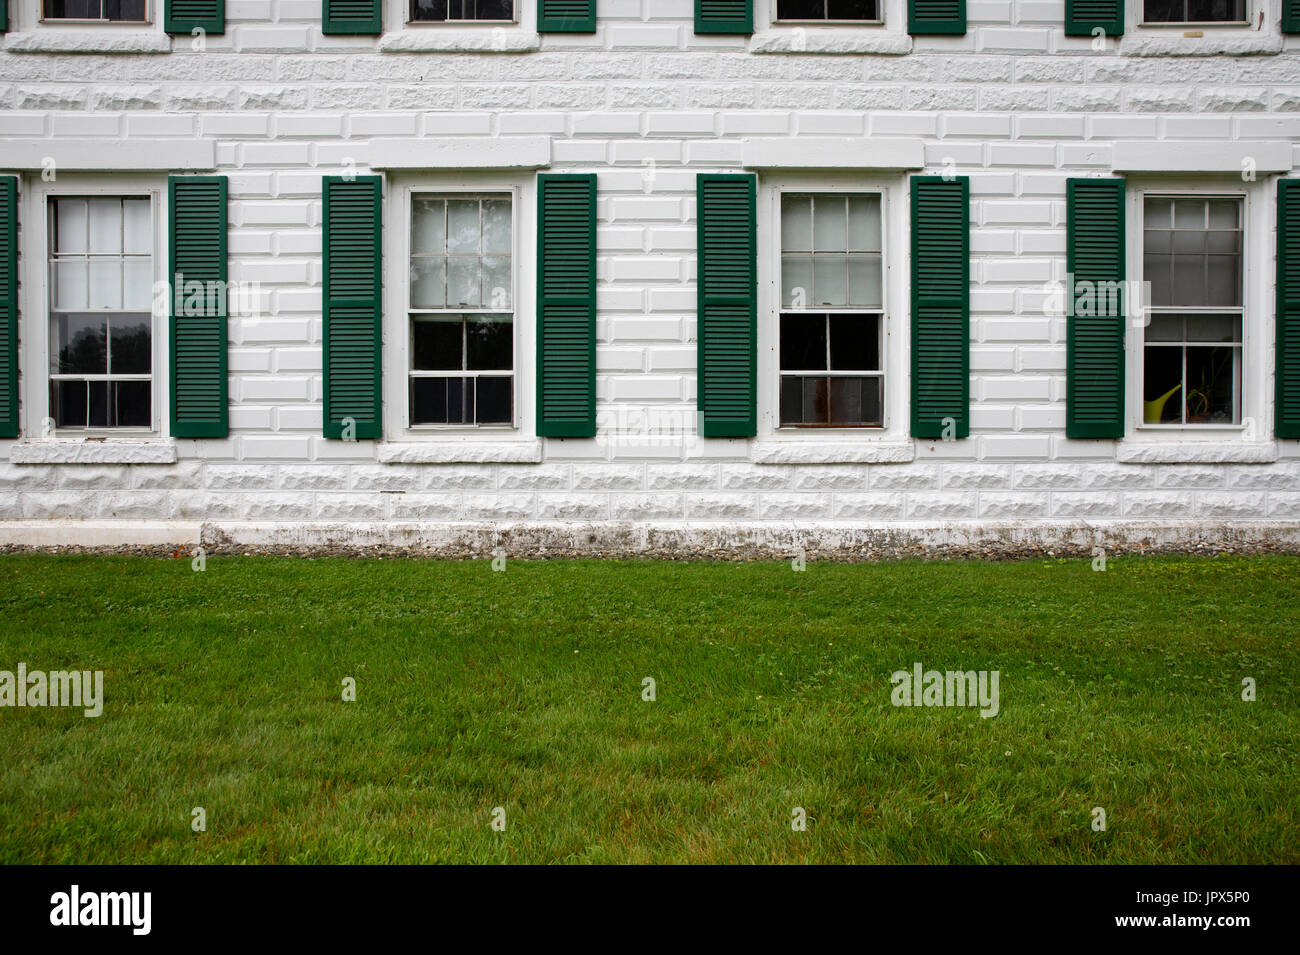 Bianco pietra mattoni facciata di edificio file di windows persiane verdi Foto Stock